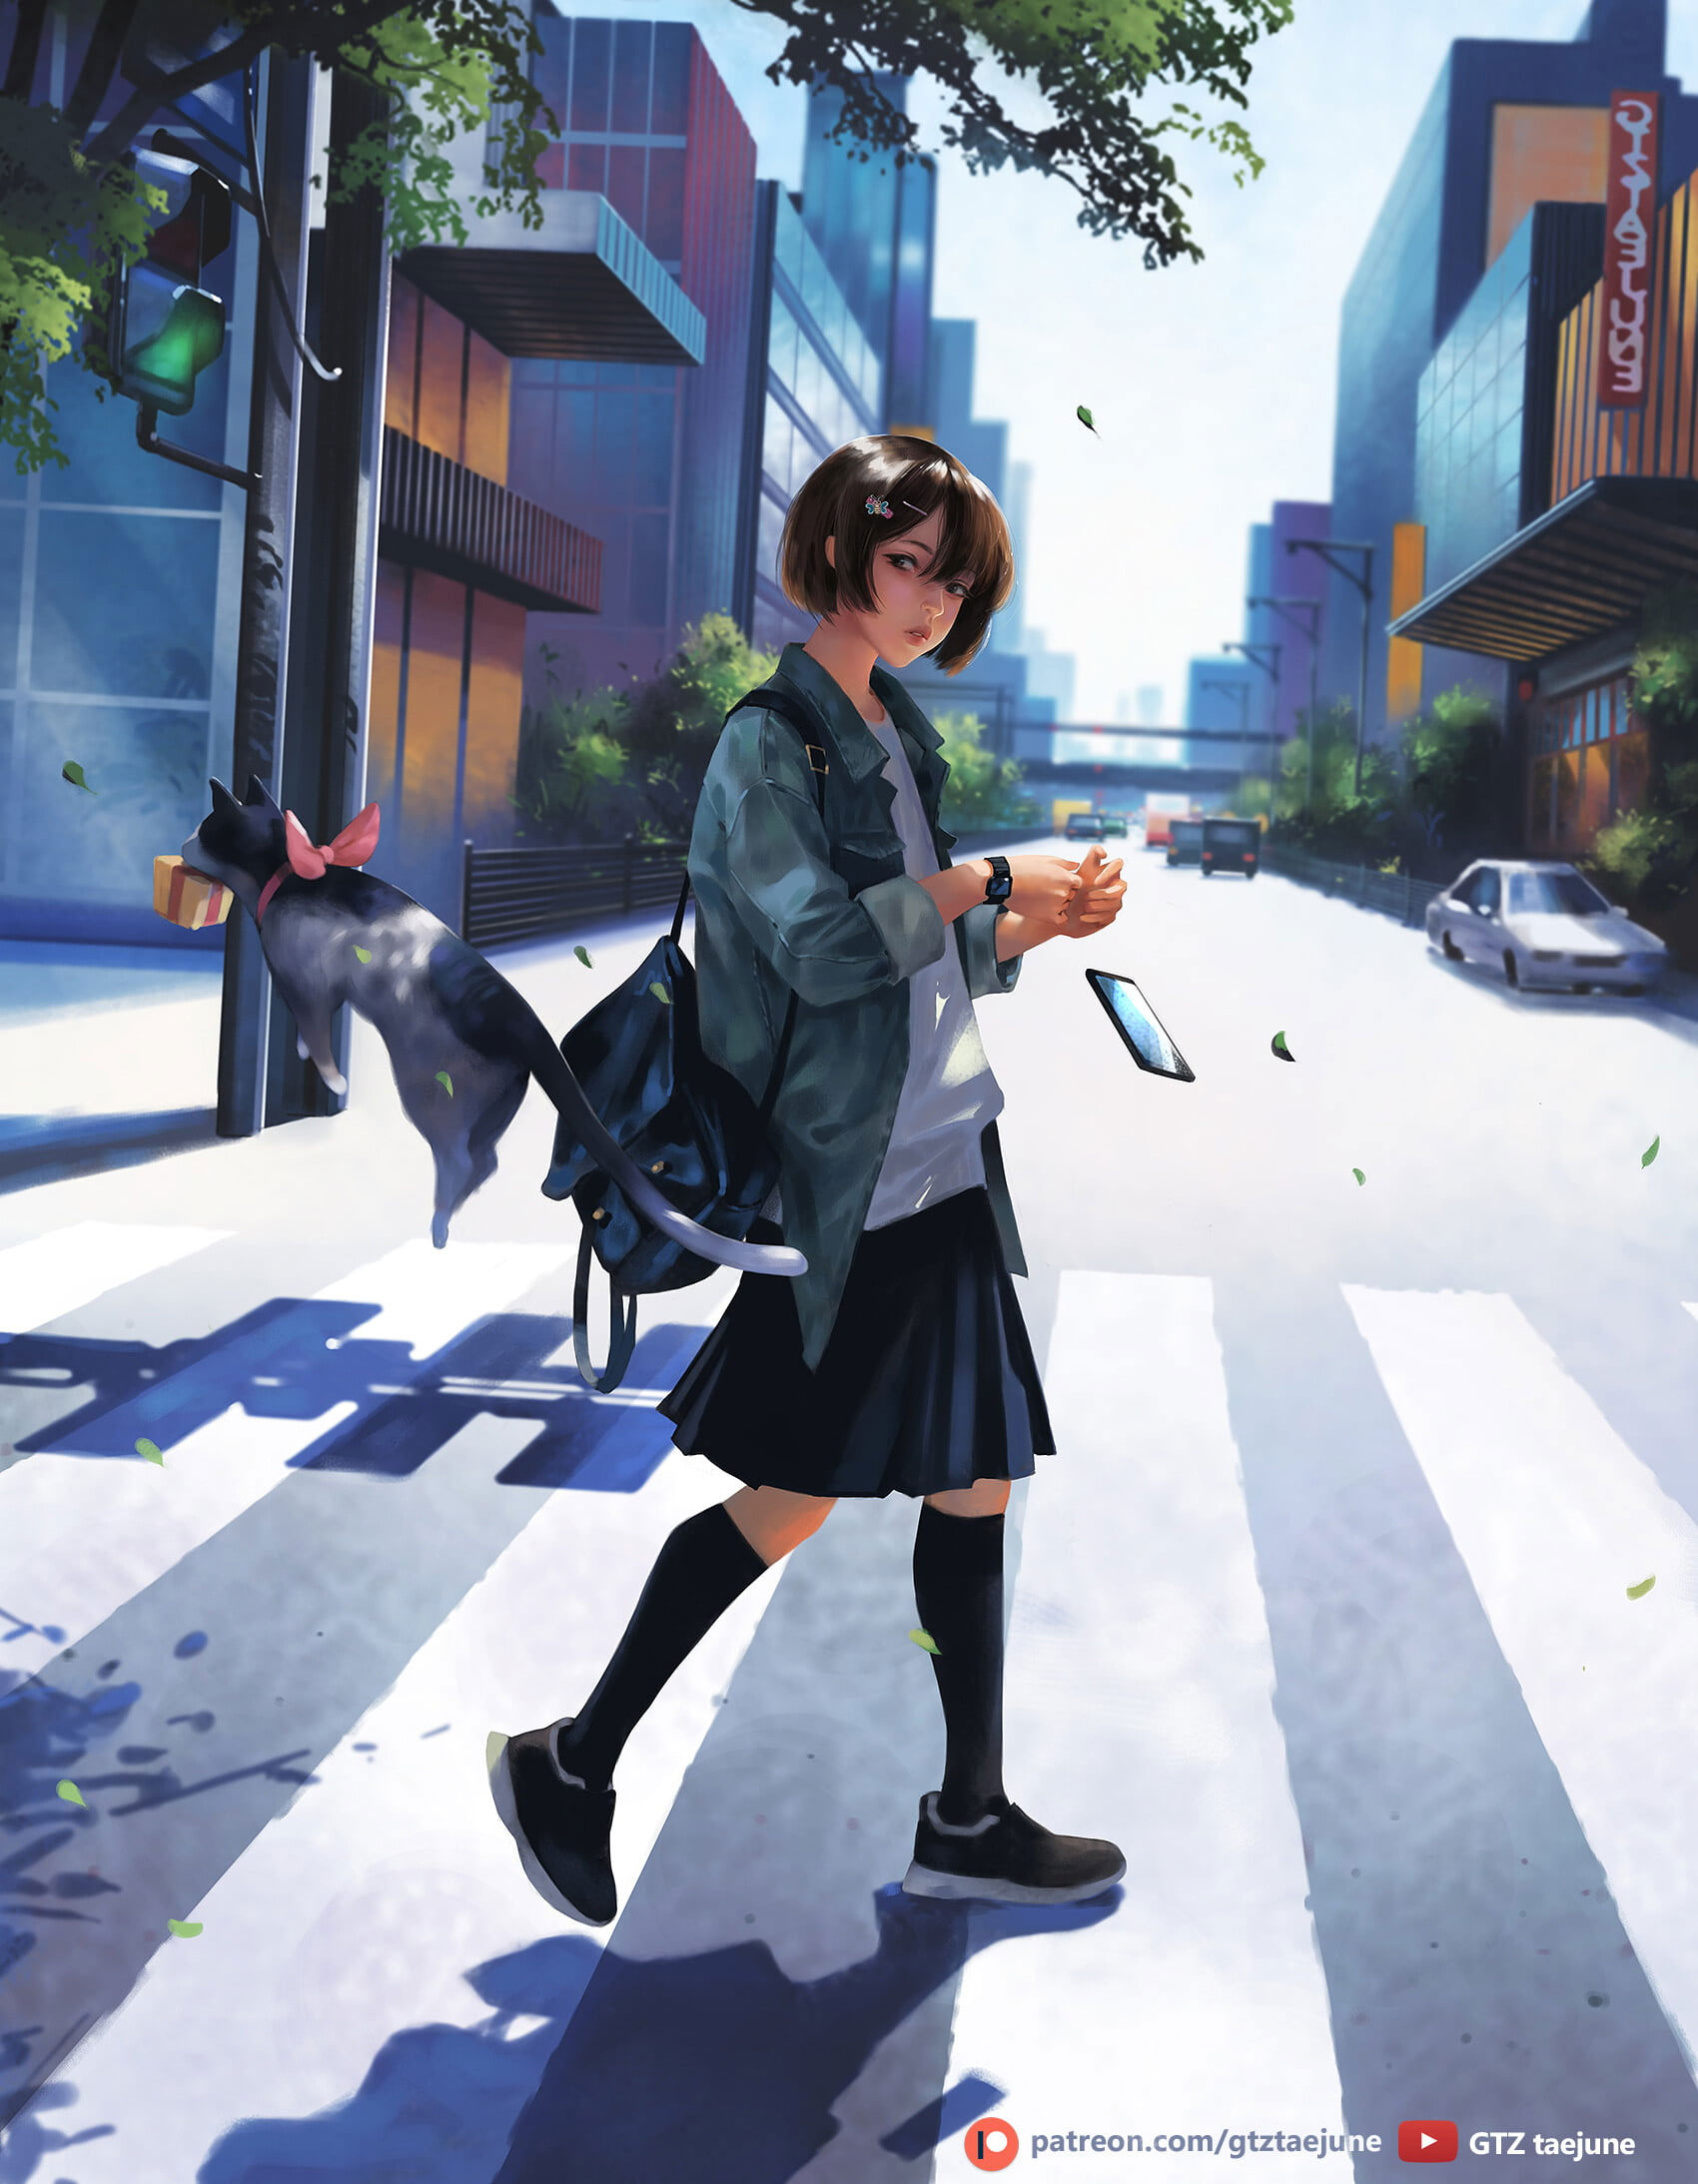 Wallpaper Anime Girls, Original Characters, Fantasy Art